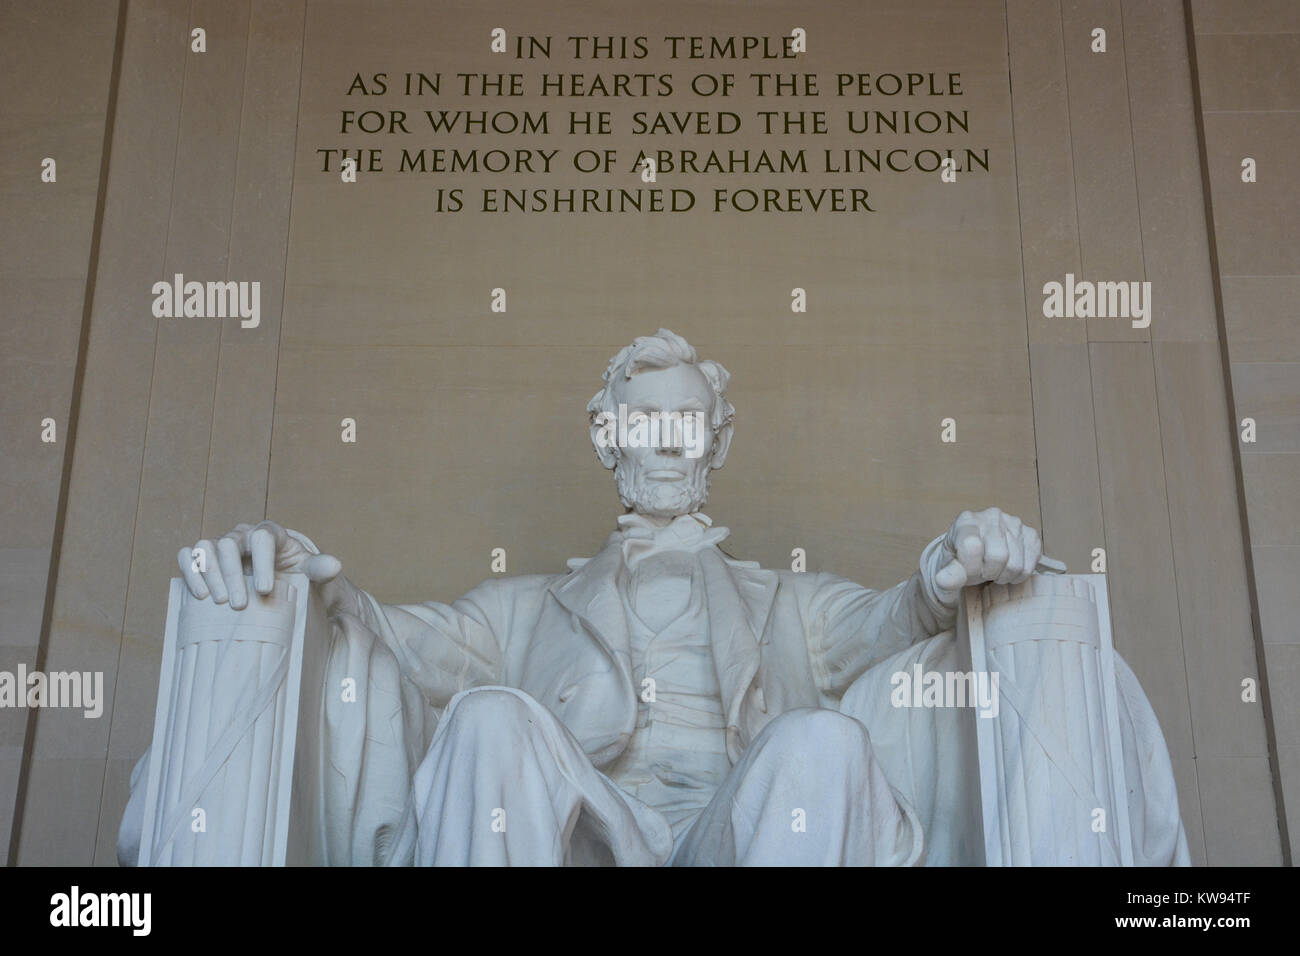 Close up shot interiore della statua in marmo di Abraham Lincoln seduto contemplando nel Lincoln Memorial, Washington DC, Stati Uniti d'America Foto Stock